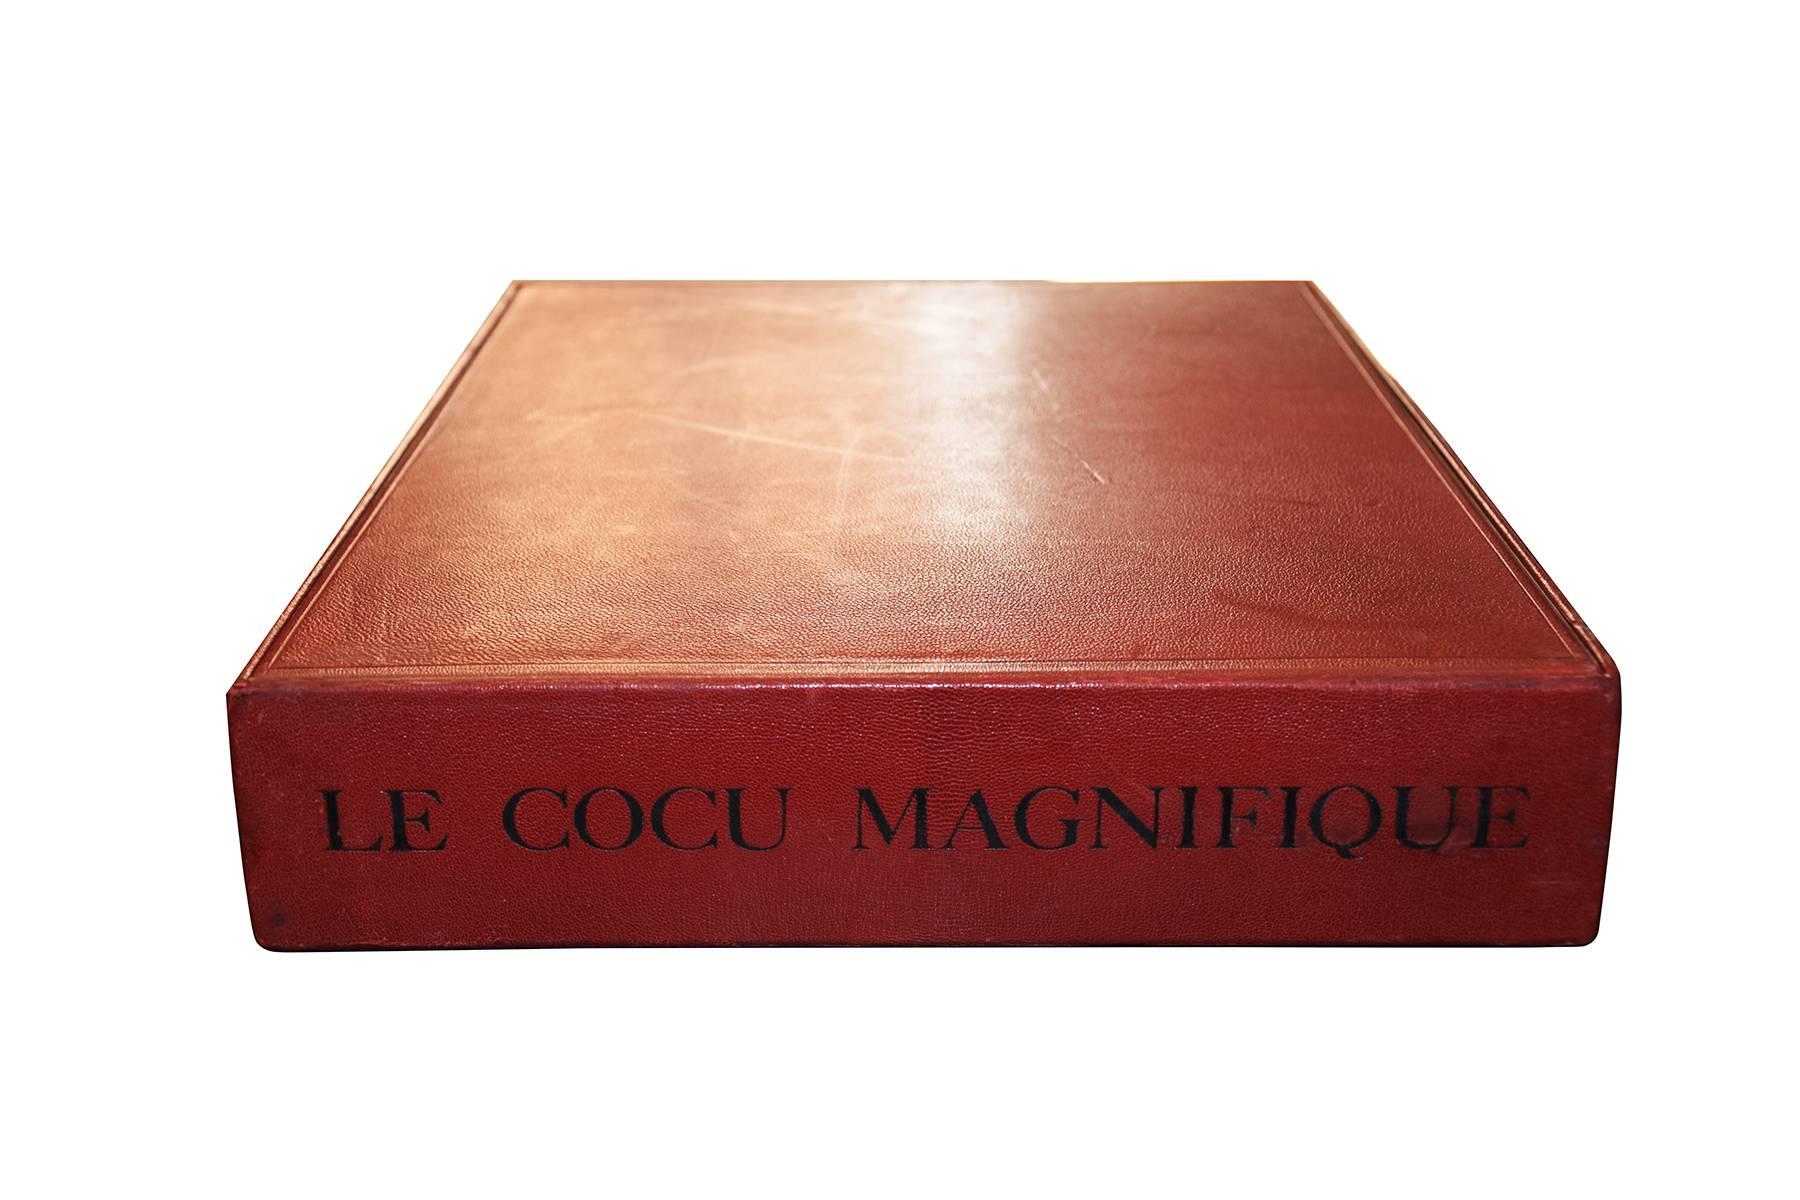 Le Cocu Magnifique - Original Complete Suite of Etchings by Pablo Picasso - 1968 For Sale 4